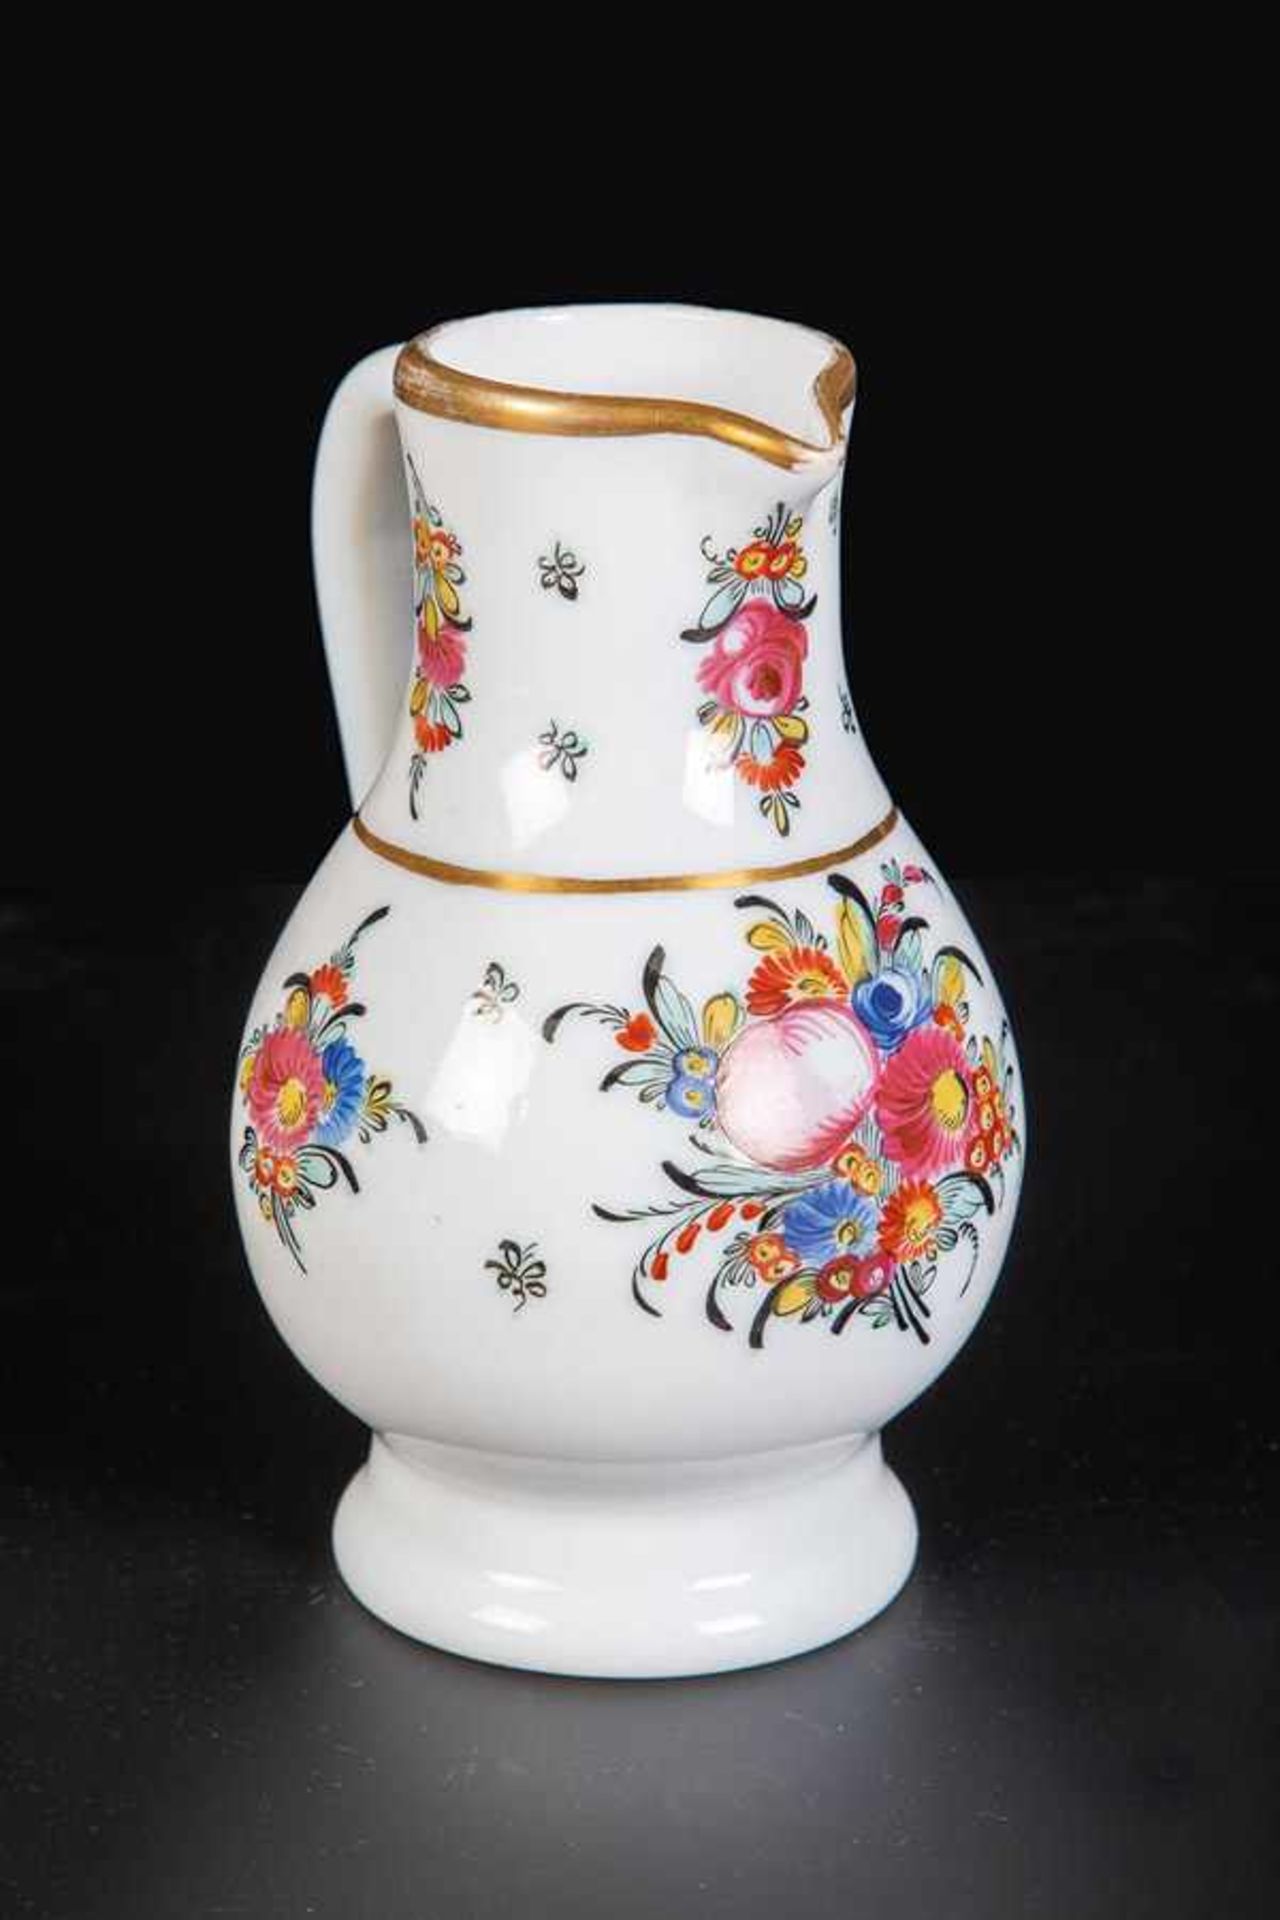 Milchglaskrug mit FloraldekorFrankreich oder Böhmen, um 1770 Birnförmige Wandung mit